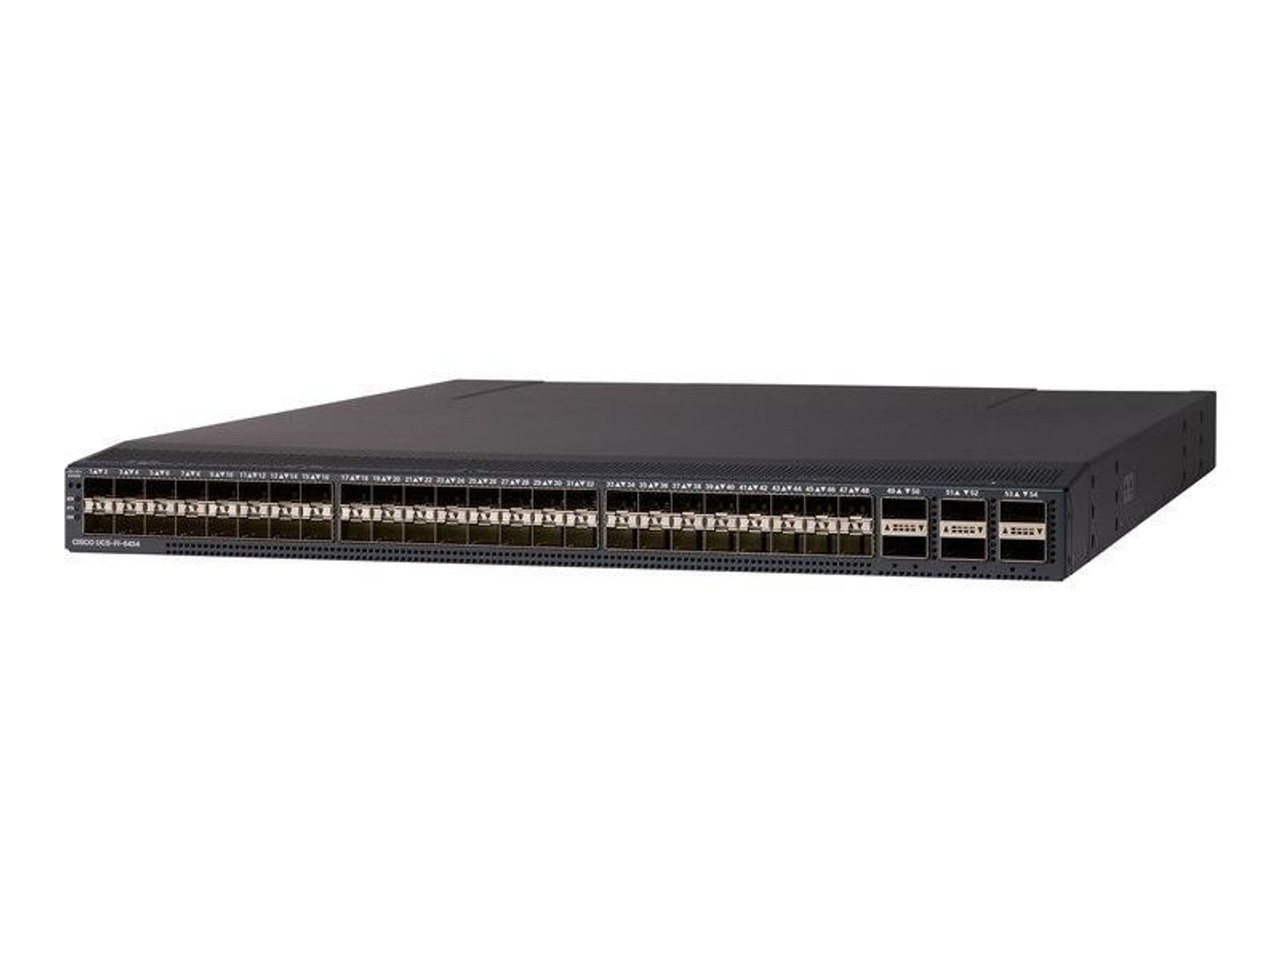 UCS-FI-6454= Cisco UCS Fabric Interconnect 6454 (Refurbished)